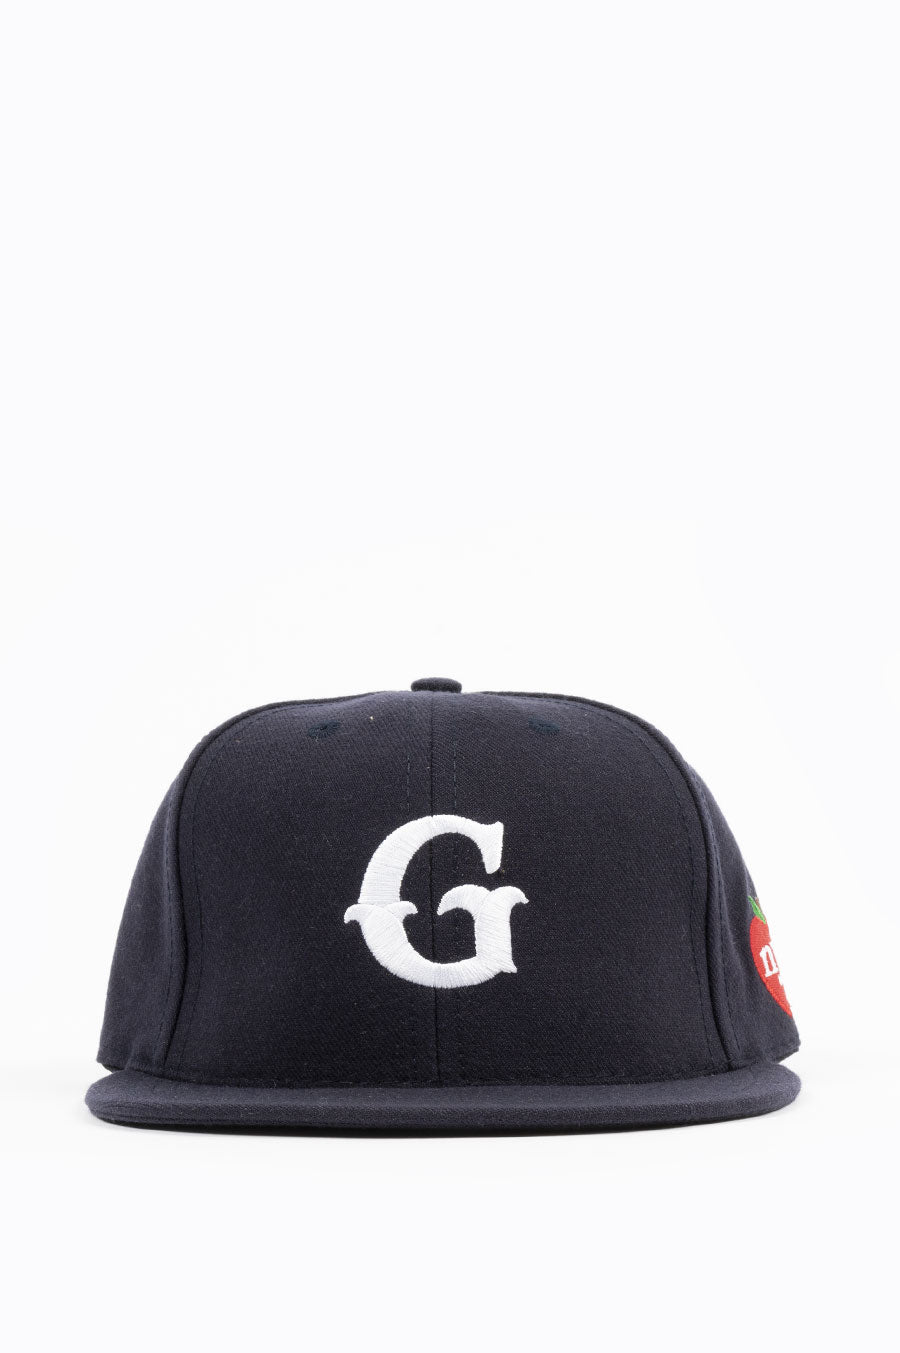 GARDENS & NYC NAVY G CAP SEEDS – BLENDS